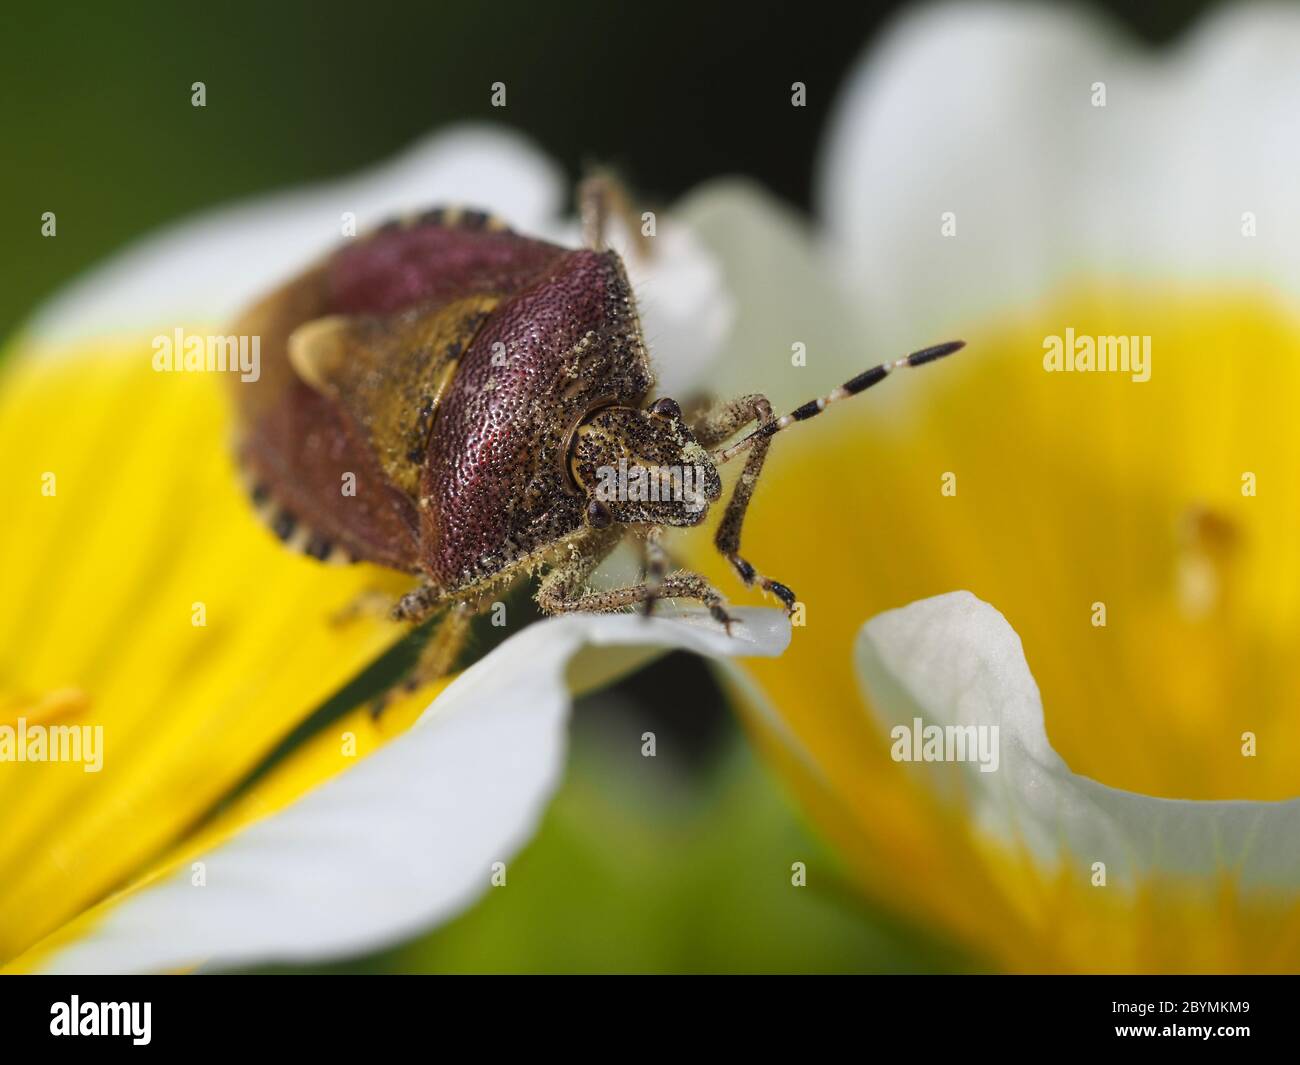 Sloe Bug, Dolycoris baccarum on flowers of poached egg plant Stock Photo